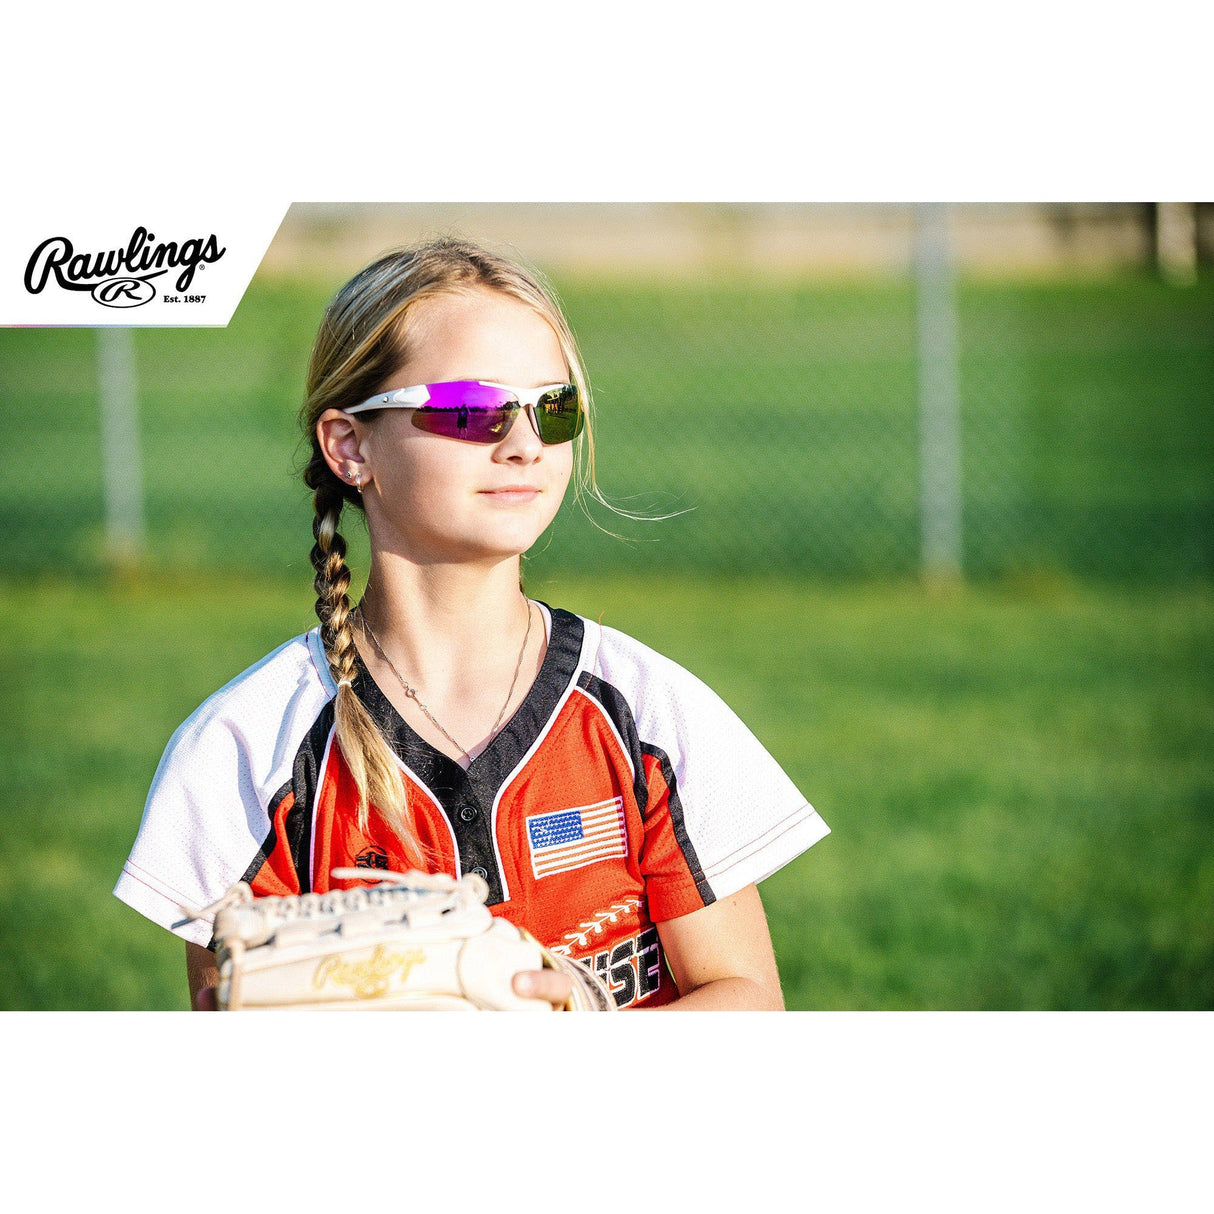 Rawlings-Sunglasses-Guardian Baseball